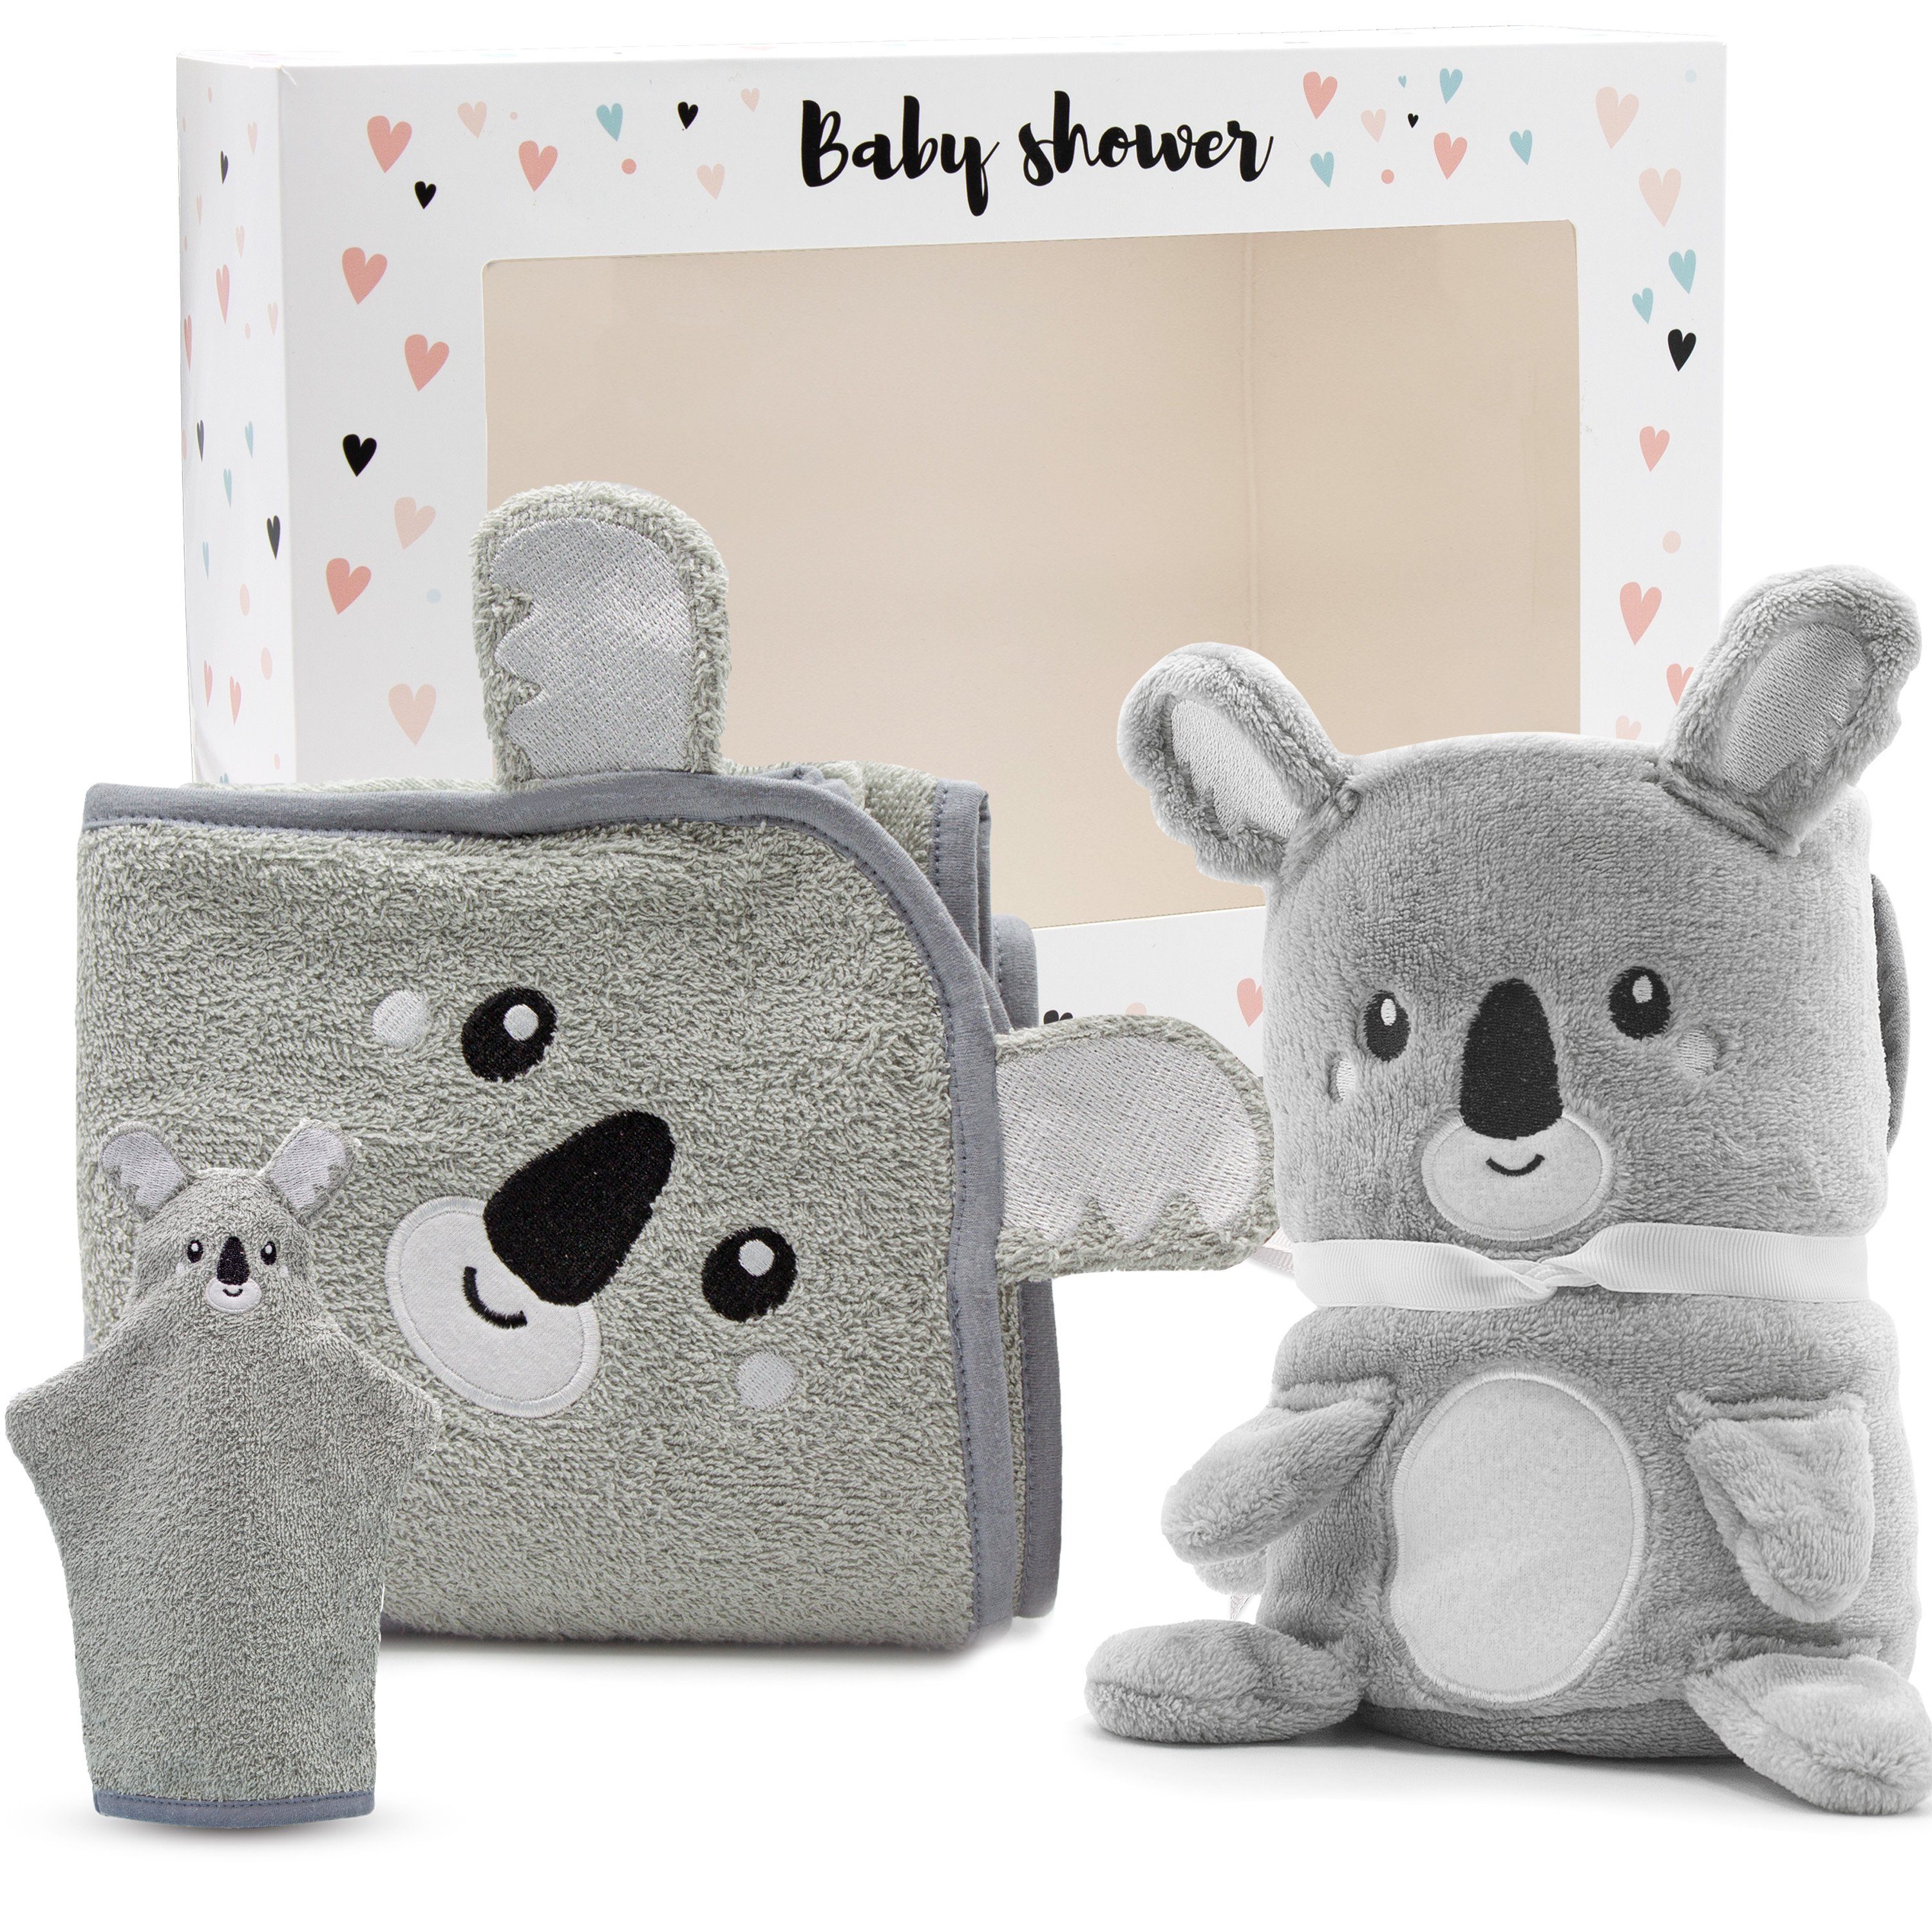 Neugeborenen-Geschenkset 3-tlg) (mit Koala Baby Babydecke + Kapuzenhandtuch + Babykajo Karton, Waschlappen